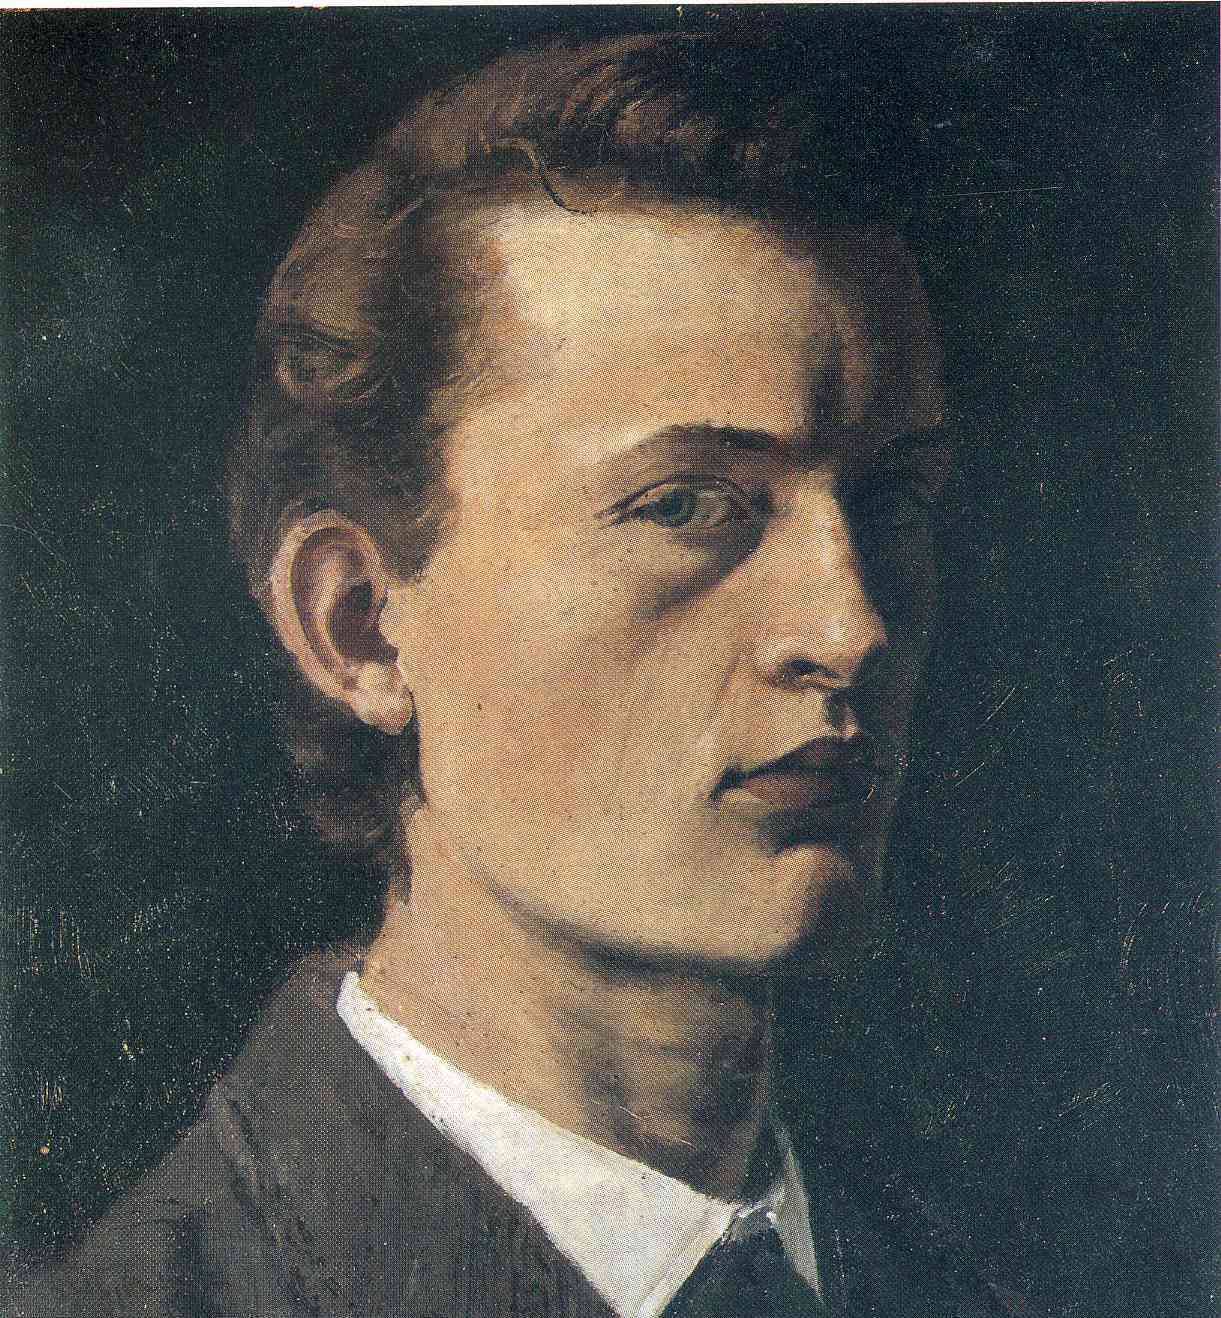 Edvard Munch, Selbstporträt, 1881-1882